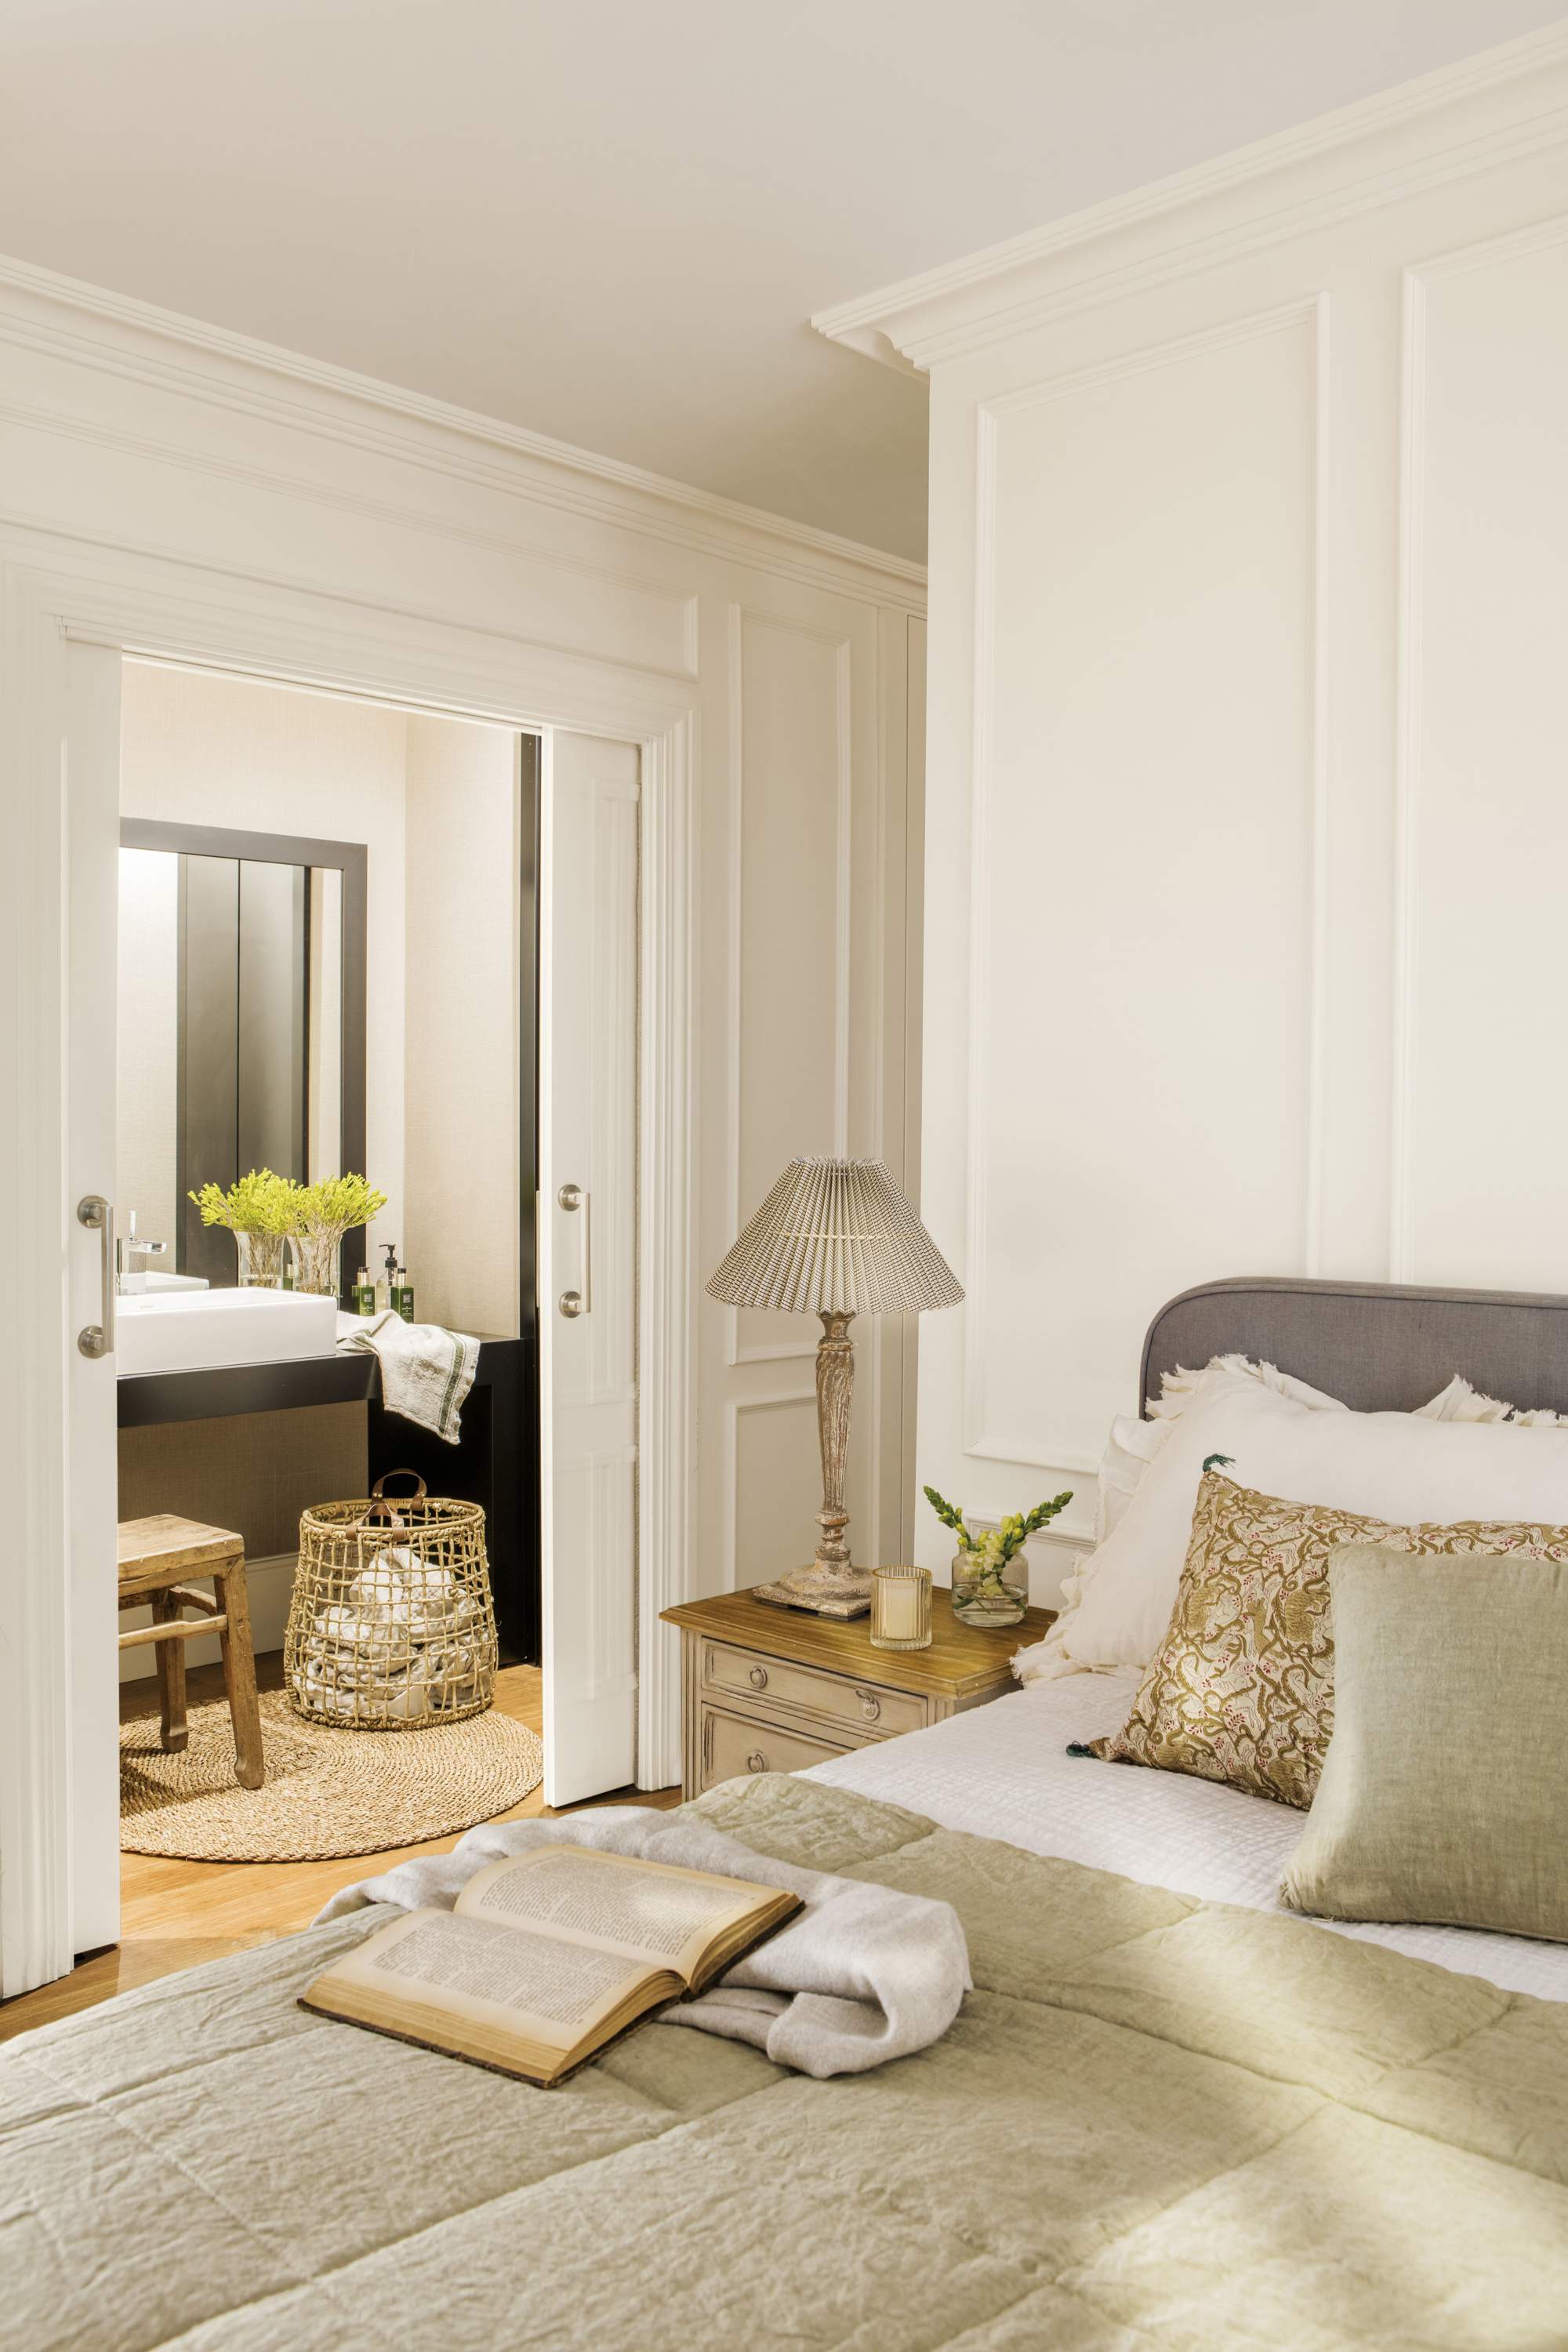 Dormitorio en tonos beige y blanco, con puertas correderas al baño.